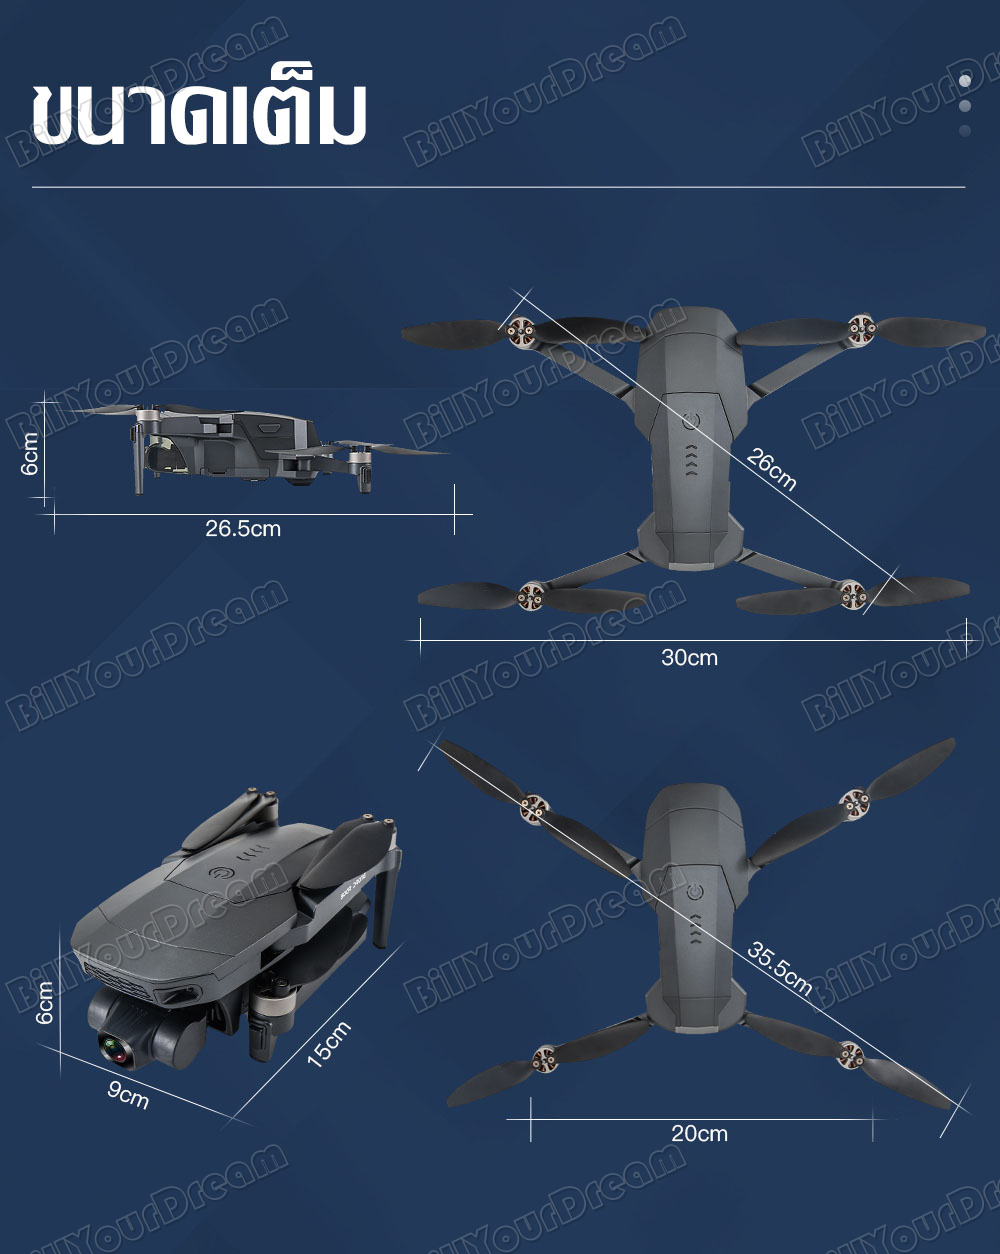 ภาพประกอบของ โดรนติดกล้อง 8k 2022 โดรนบังคับใหญ่ drone SG907 MAX โดรนบินระยะไกล กล้องสองทางไกล โครนติดกล้อง โดนบังคับกล้อง โดรนบังคับ โดรนgps